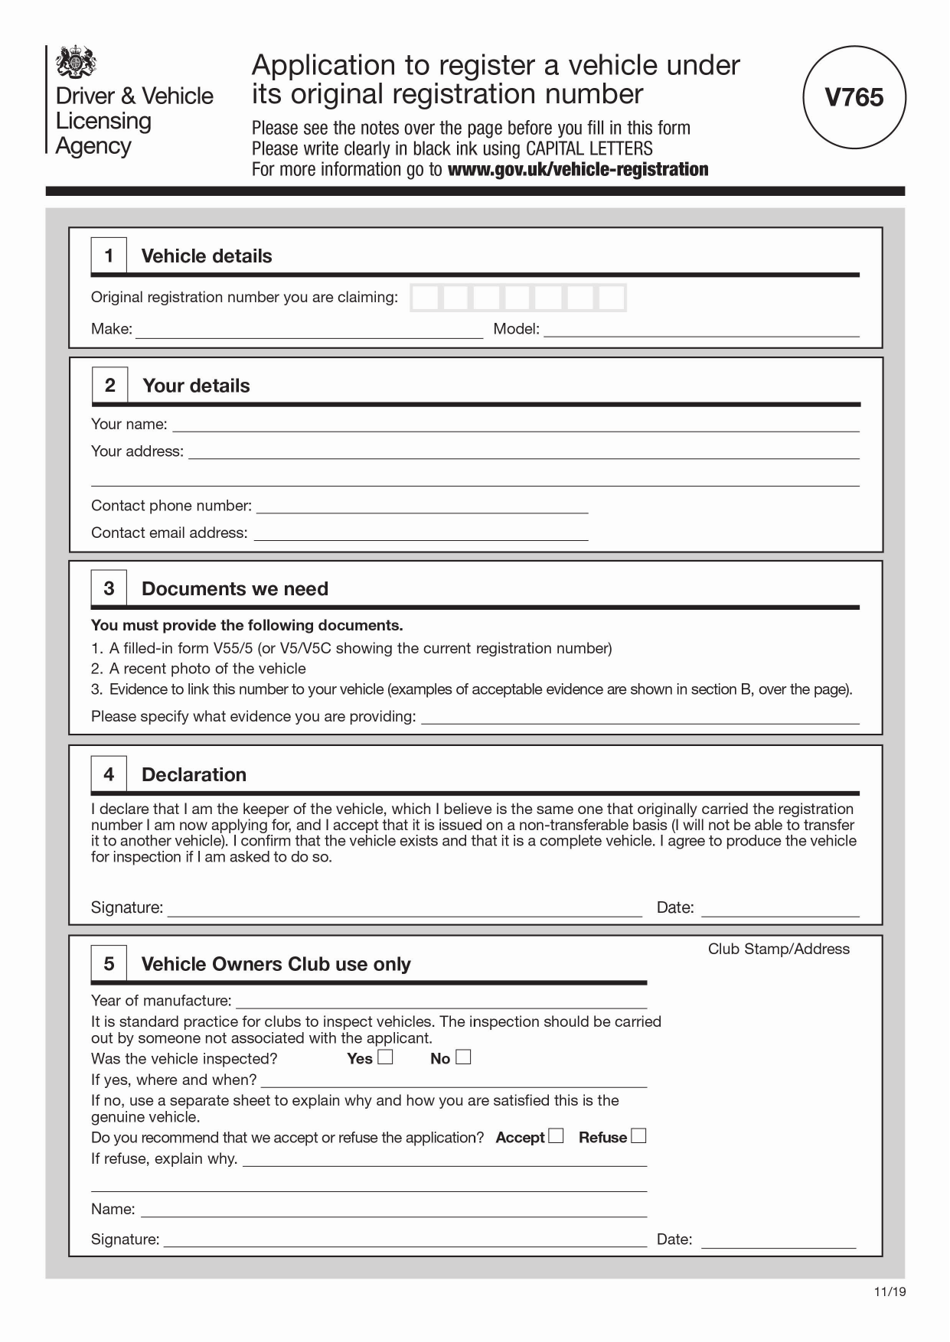 Form V765 Application to Register a Vehicle Under Its Original Registration Number - United Kingdom, Page 1